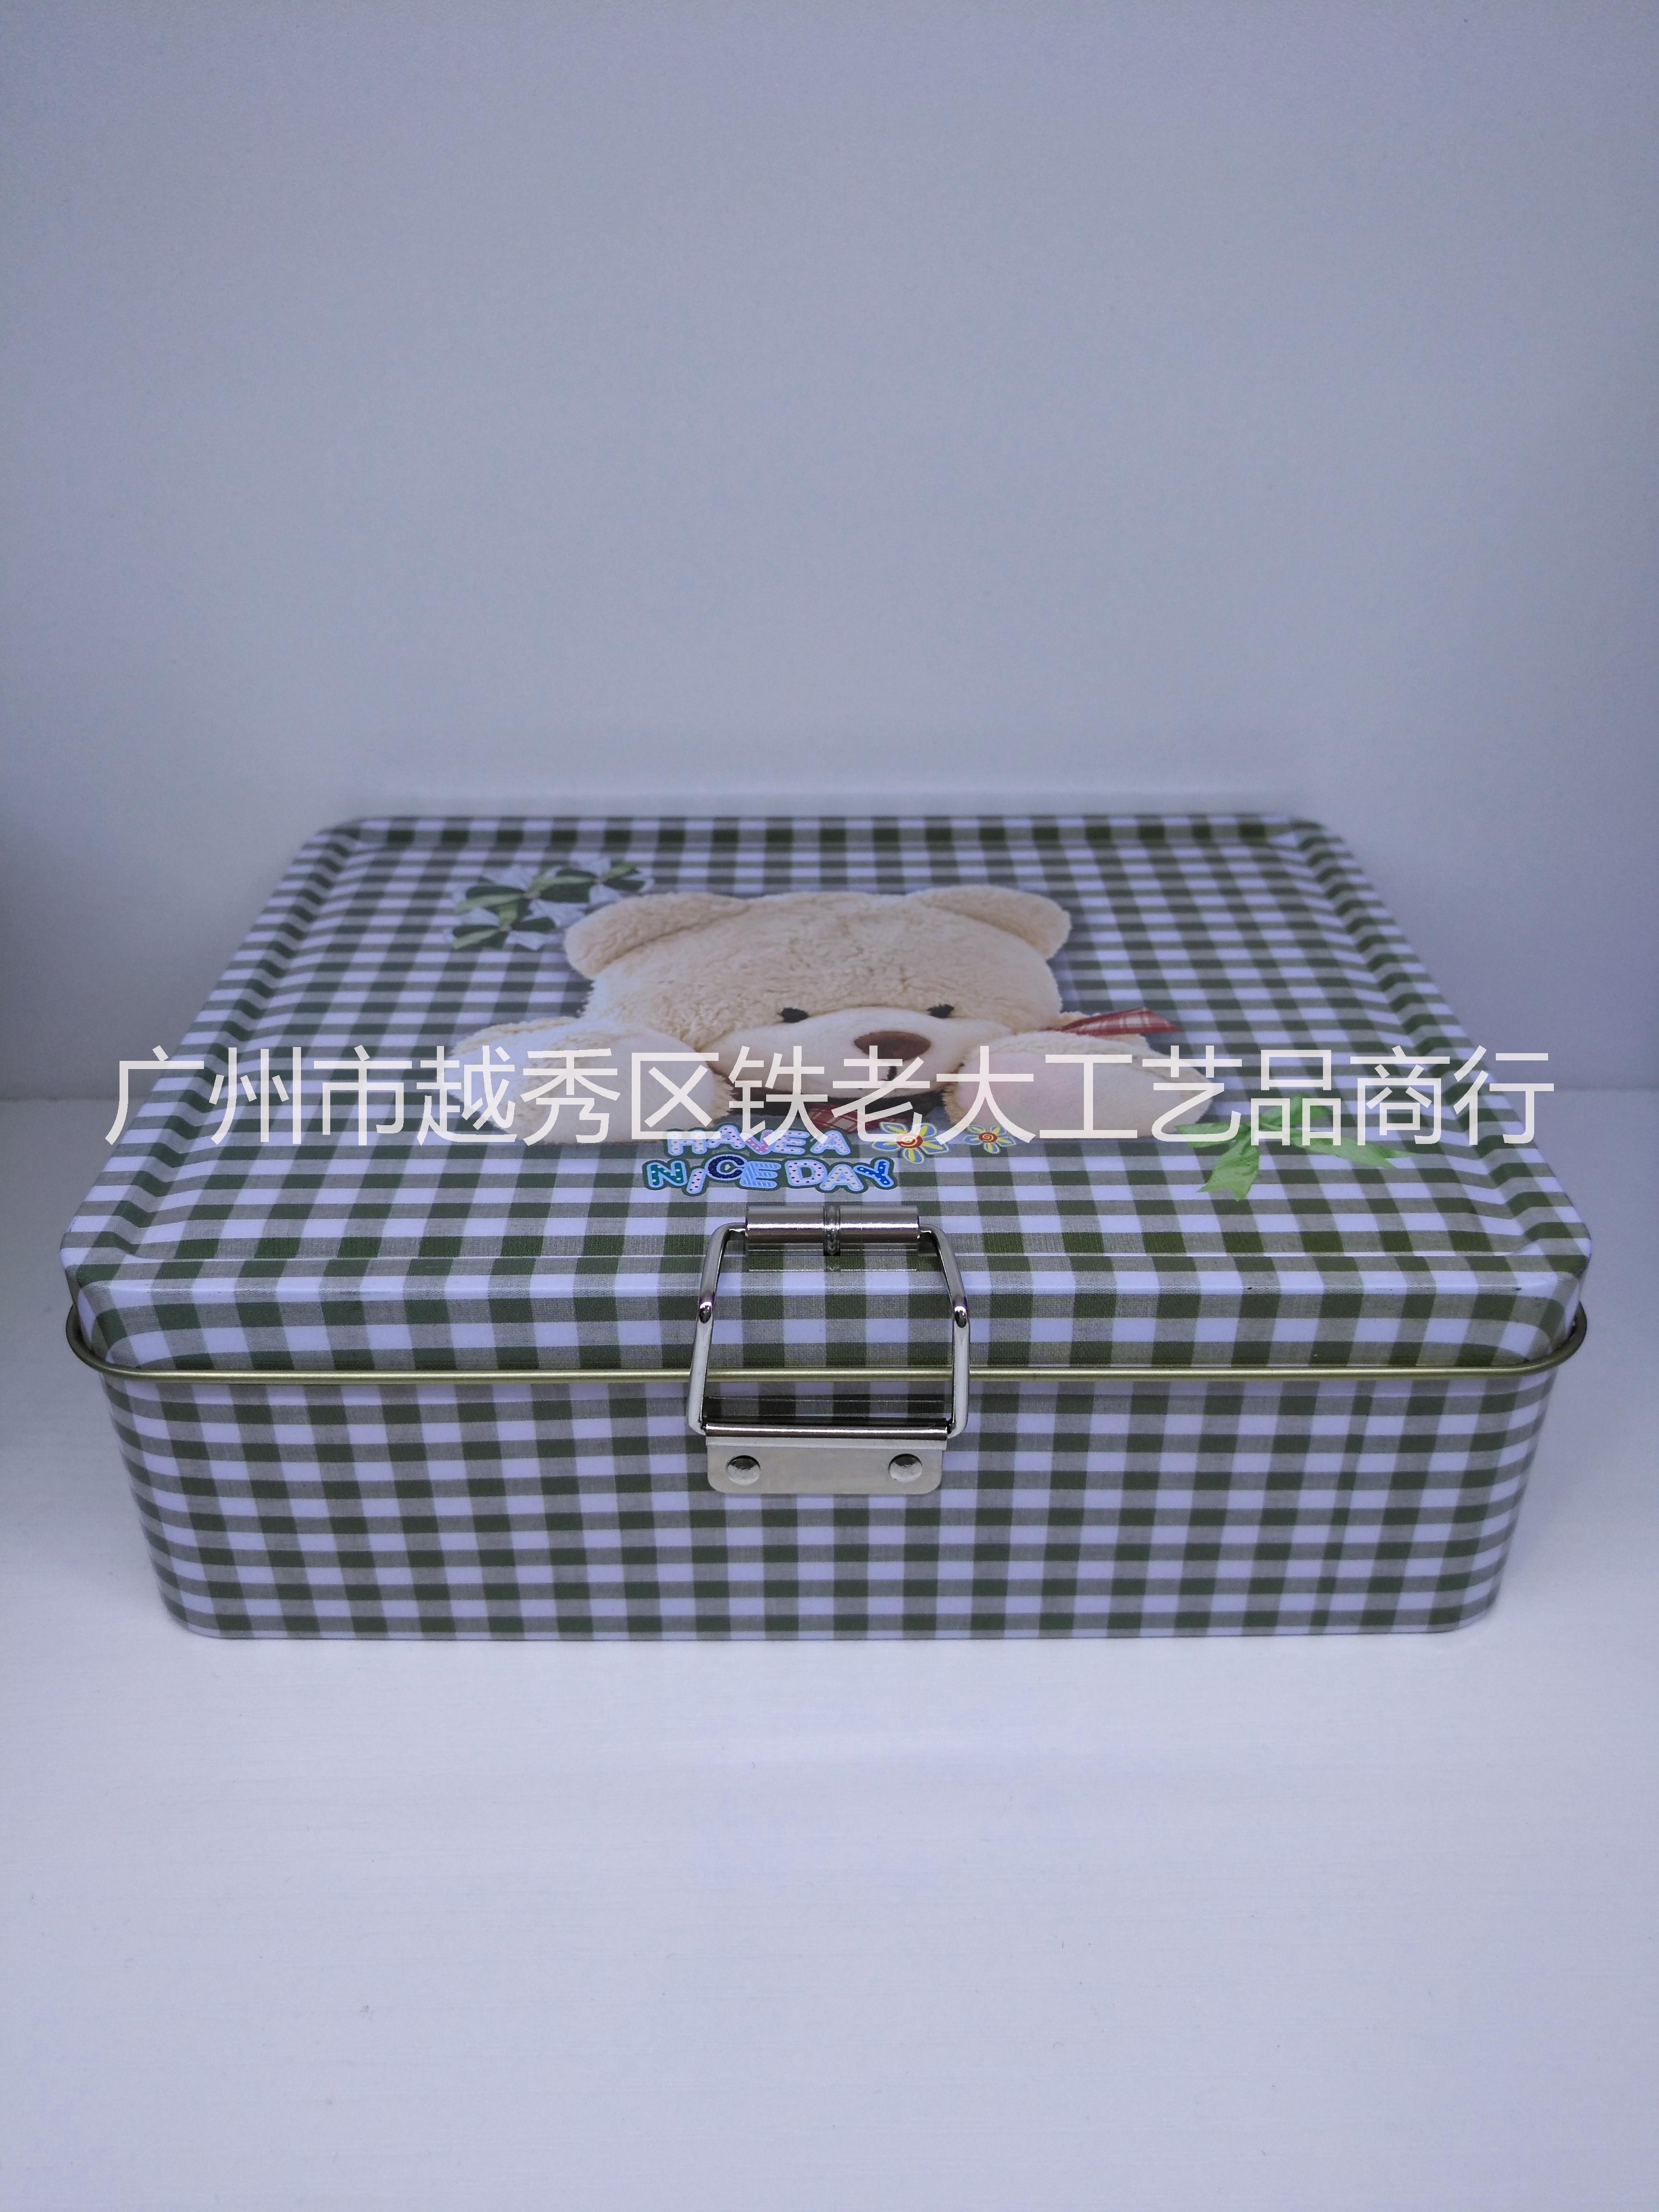 曲奇饼盒报价 曲奇饼盒厂家直销 曲奇饼盒批发价格 曲奇饼盒定制价